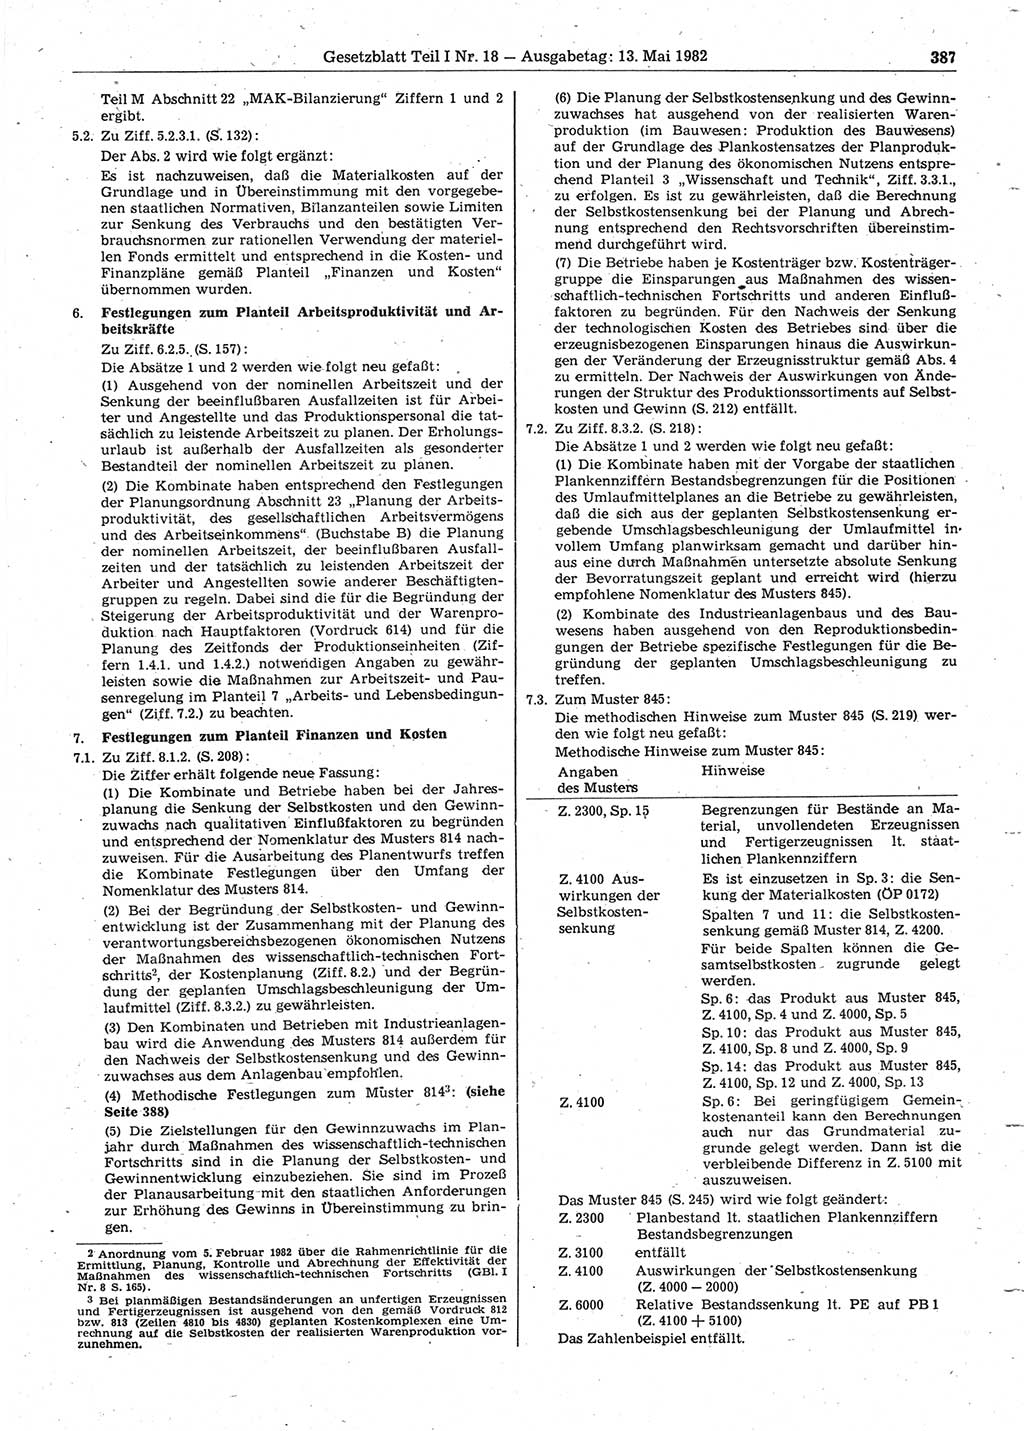 Gesetzblatt (GBl.) der Deutschen Demokratischen Republik (DDR) Teil Ⅰ 1982, Seite 387 (GBl. DDR Ⅰ 1982, S. 387)